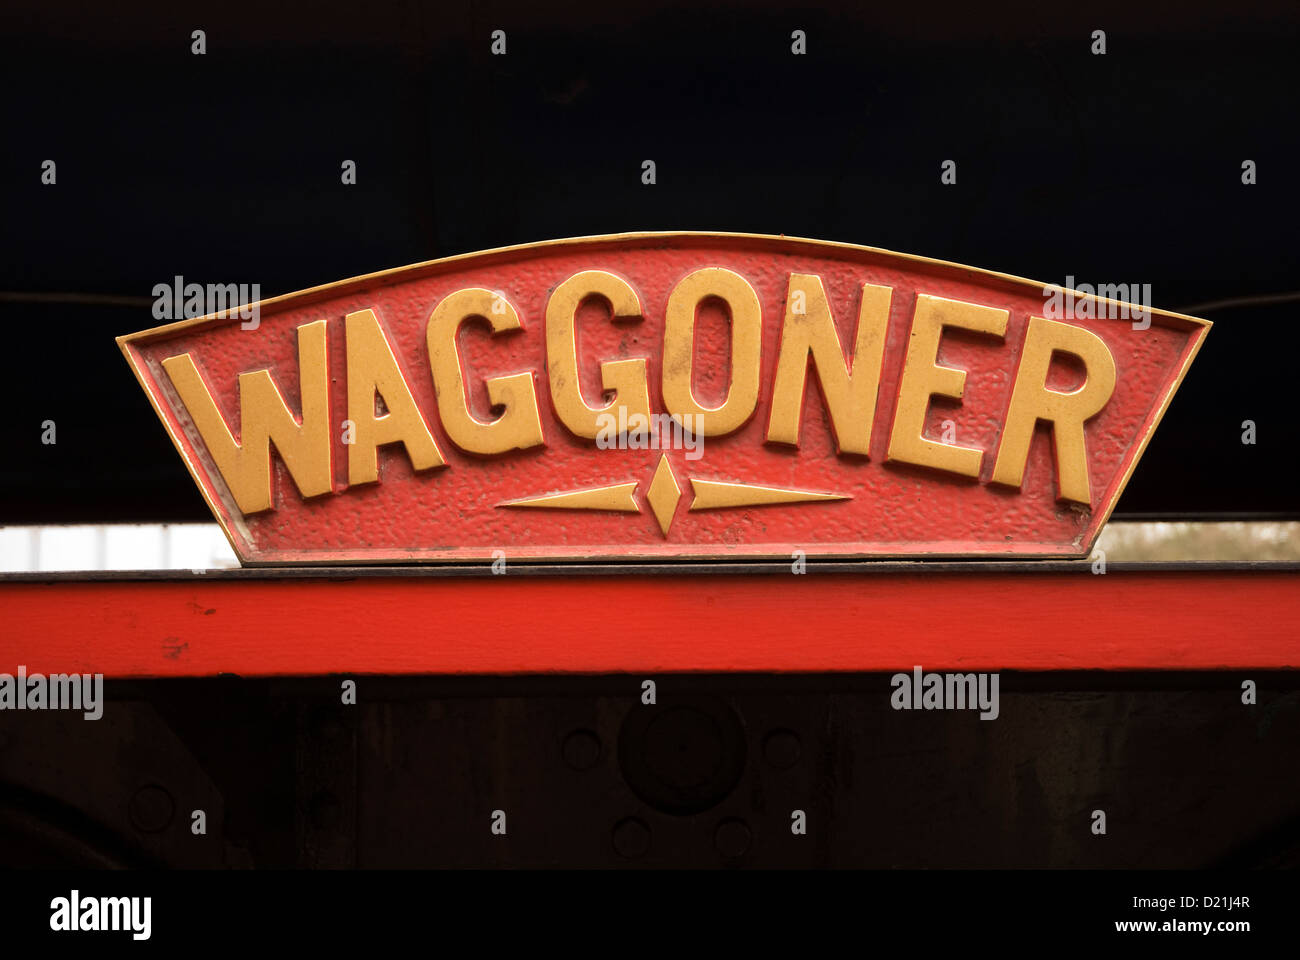 Locomotive name plate 'Waggoner' Stock Photo